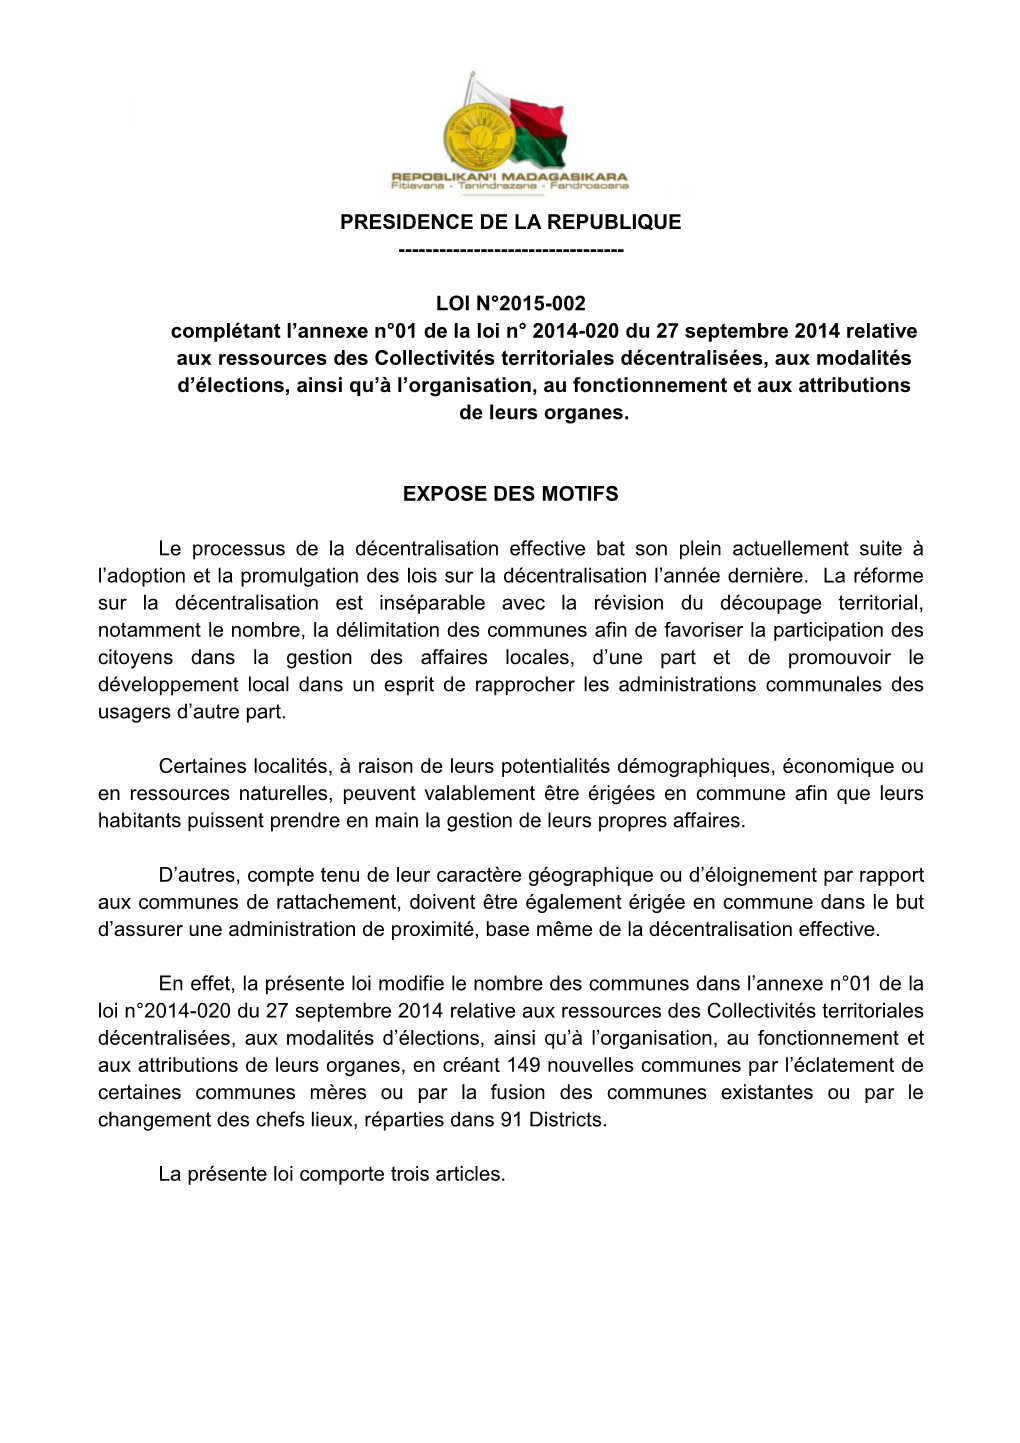 LOI N°2015-002 Complétant L'annexe N°01 De La Loi N° 2014-0